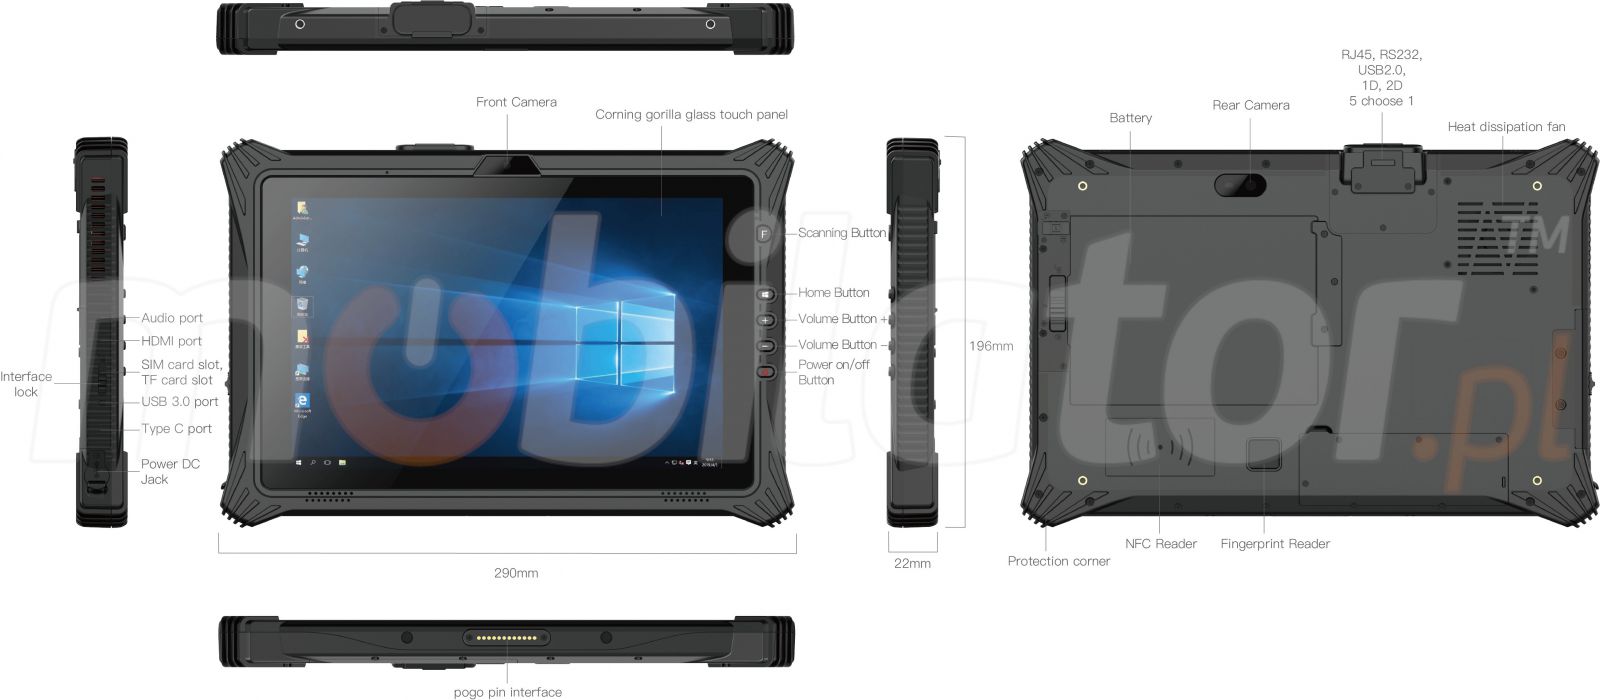 Wodoodporny 10.1-calowy tablet z procesorem Intel I7, z NFC, skanerem kodw kreskowych 2D, pamici 16GB RAM, Windows 10 PRO, Bluetooth 4.2 - Emdoor I10U v.16